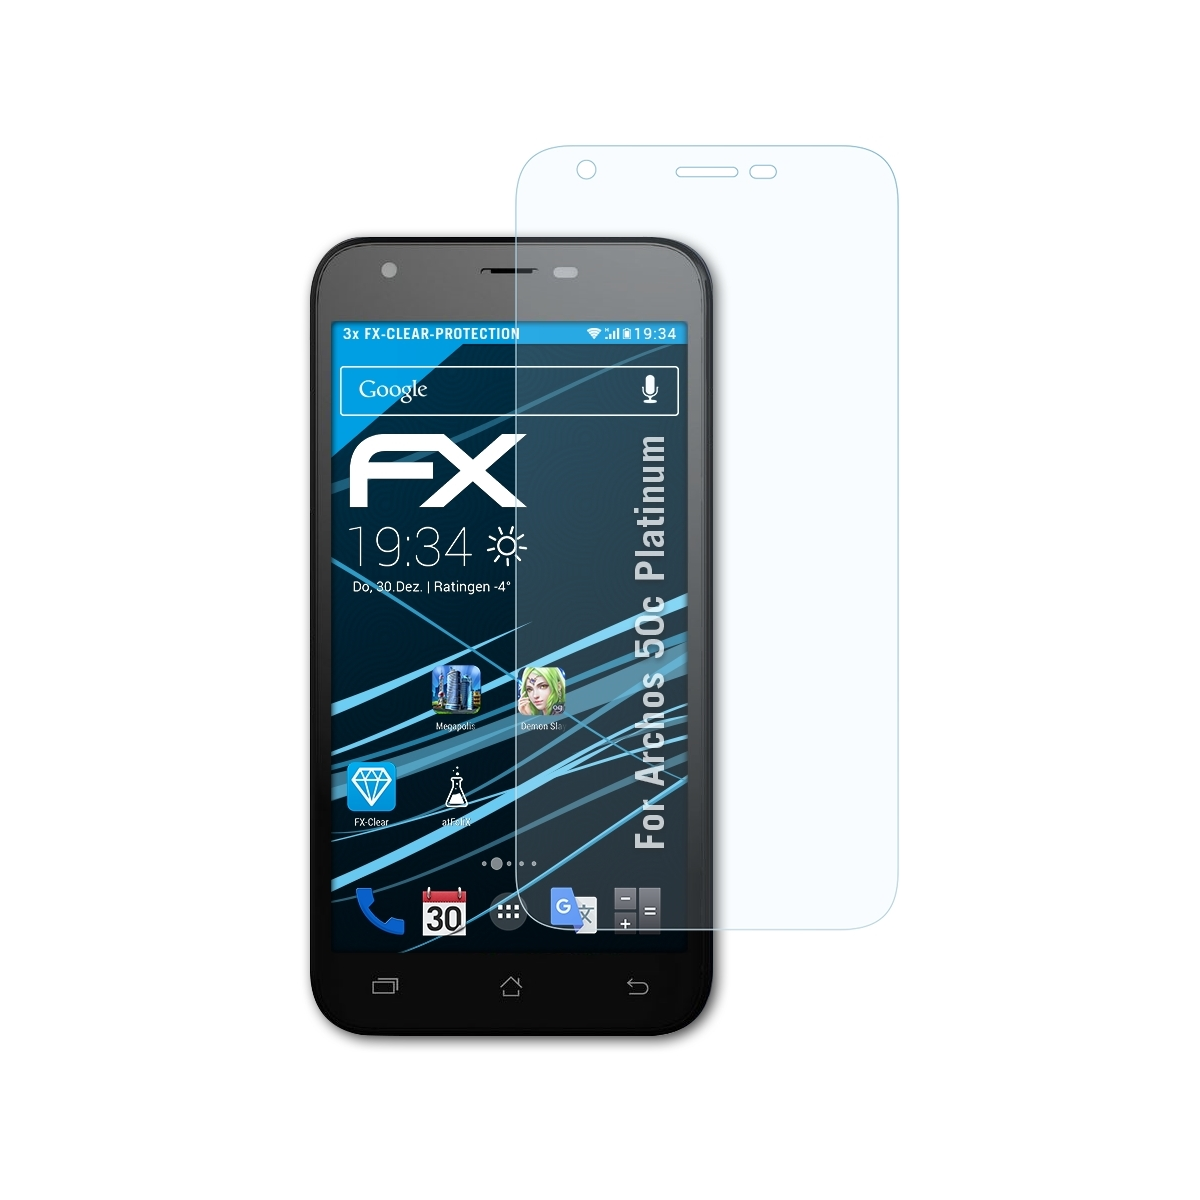 Displayschutz(für Platinum) FX-Clear ATFOLIX 50c Archos 3x